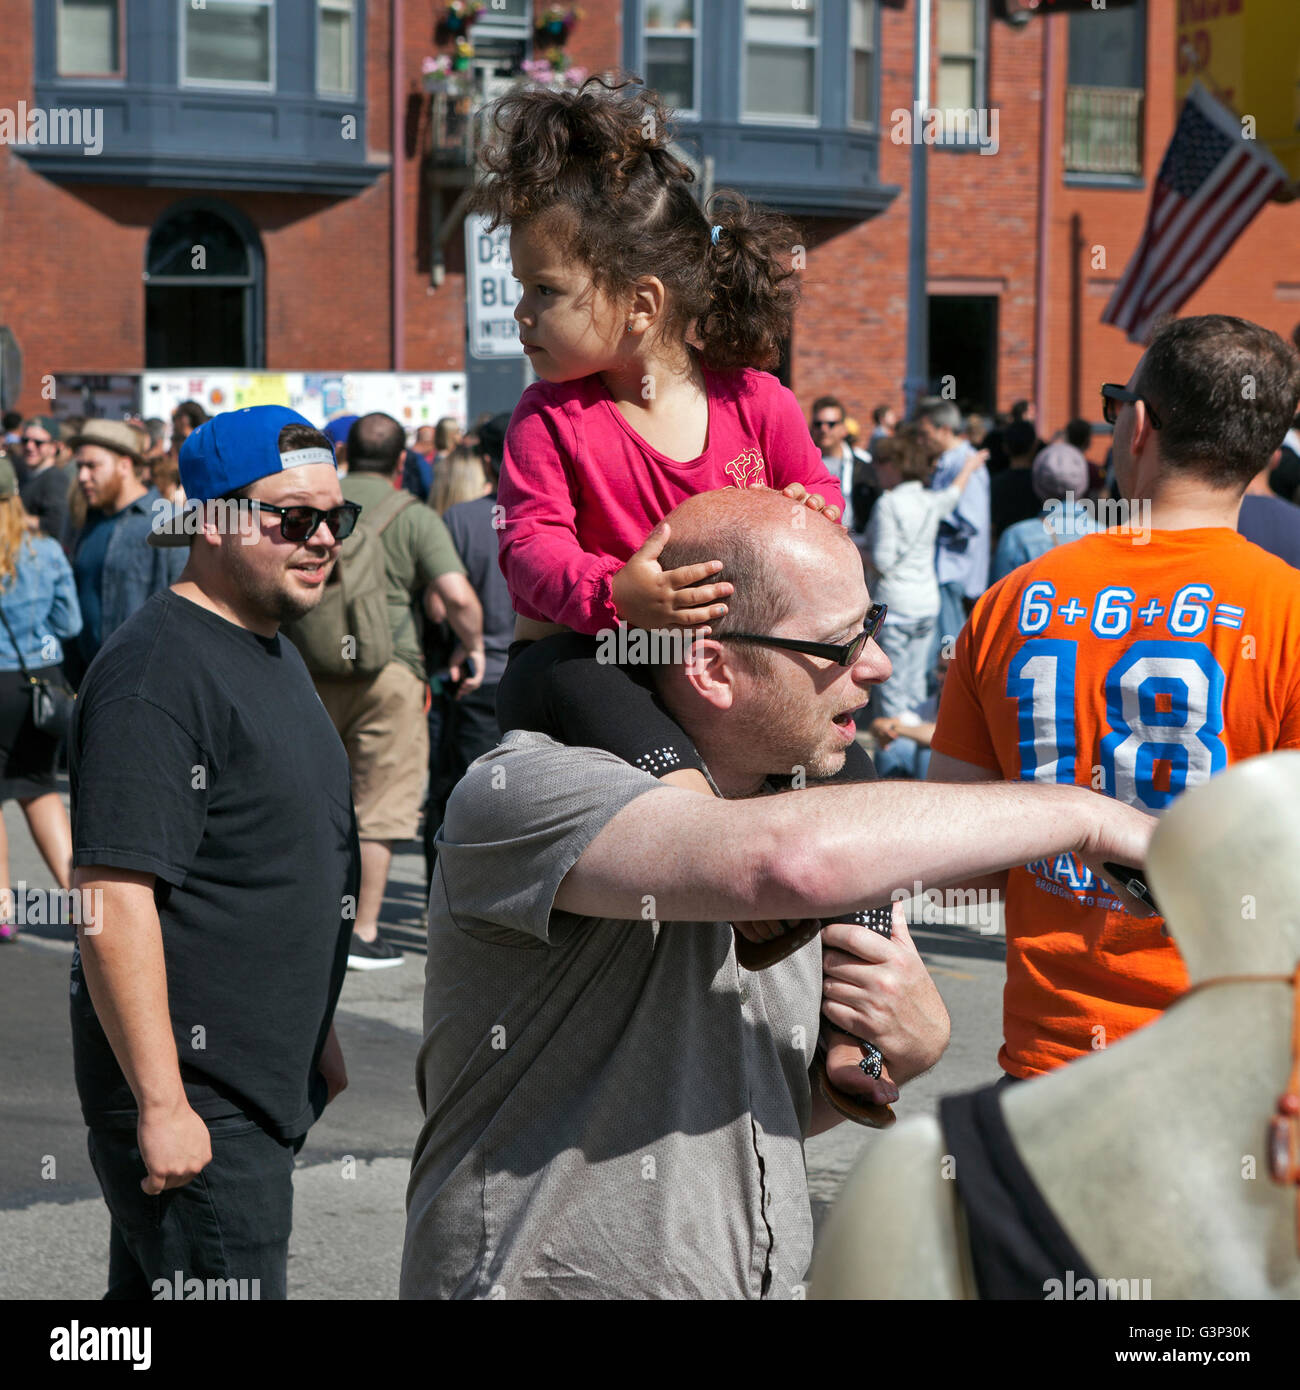 Die Locust Street Festival in Milwaukee, Wisconsin ist eine jährliche Veranstaltung mit Musik, Kunst und Essen. Stockfoto